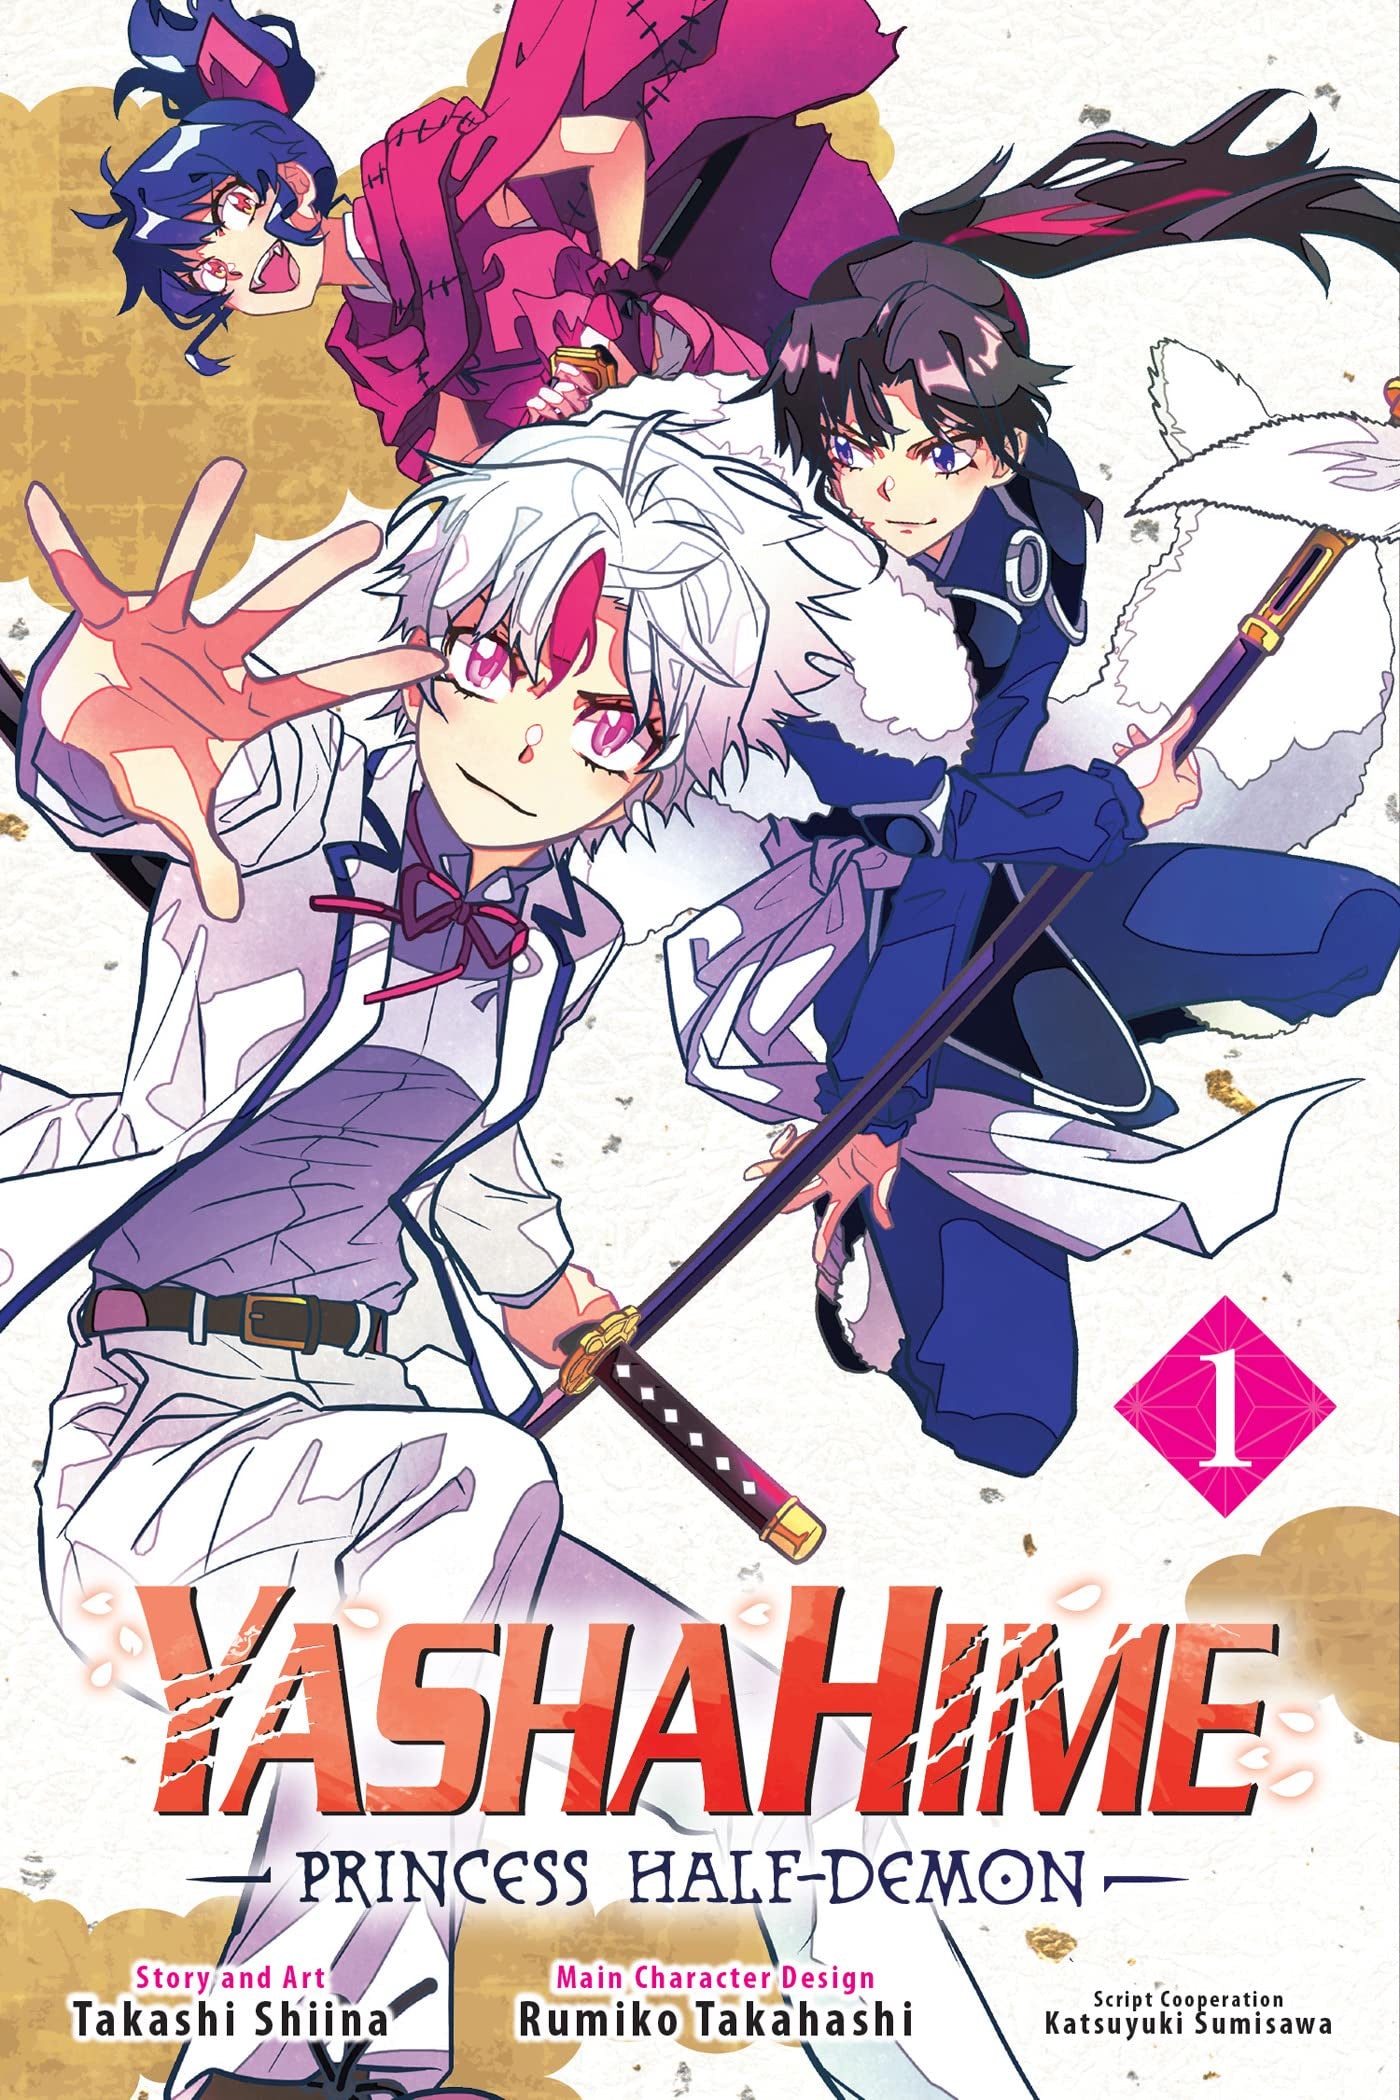 YASHAHIME PRINCESS HALF DEMON VOLUME 01